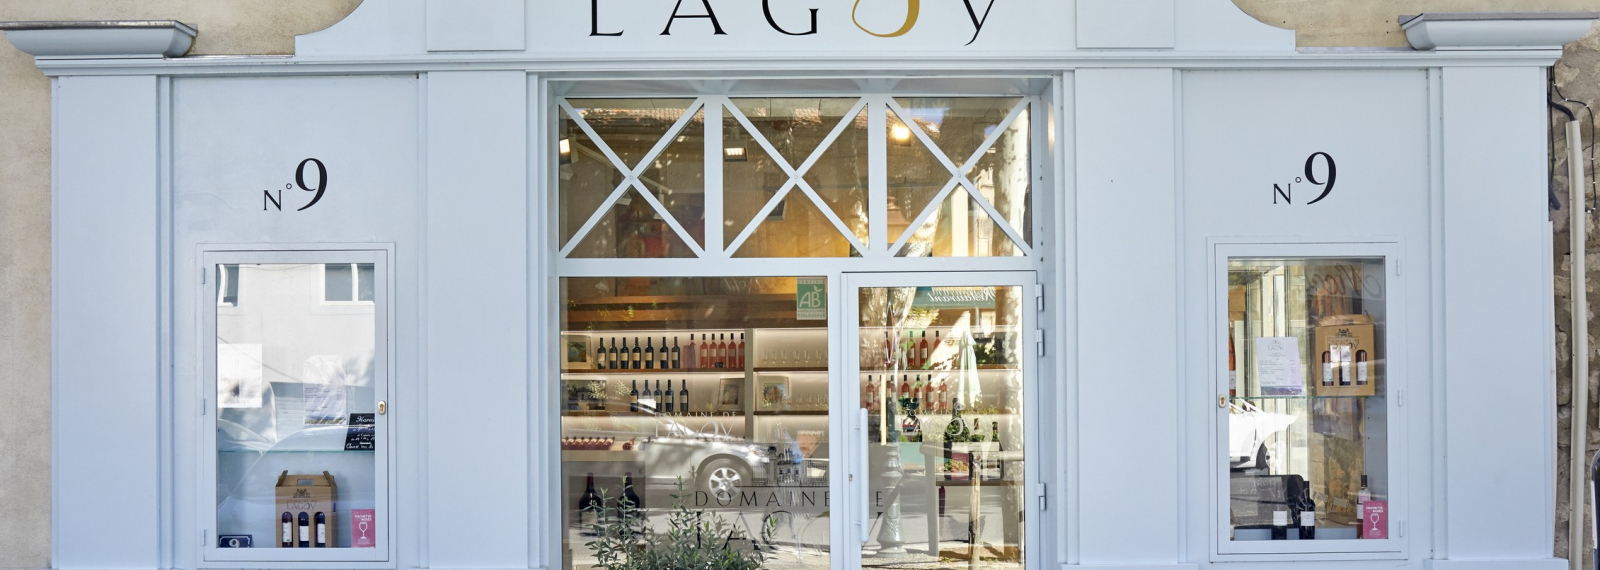 La boutique du Domaine de Lagoy